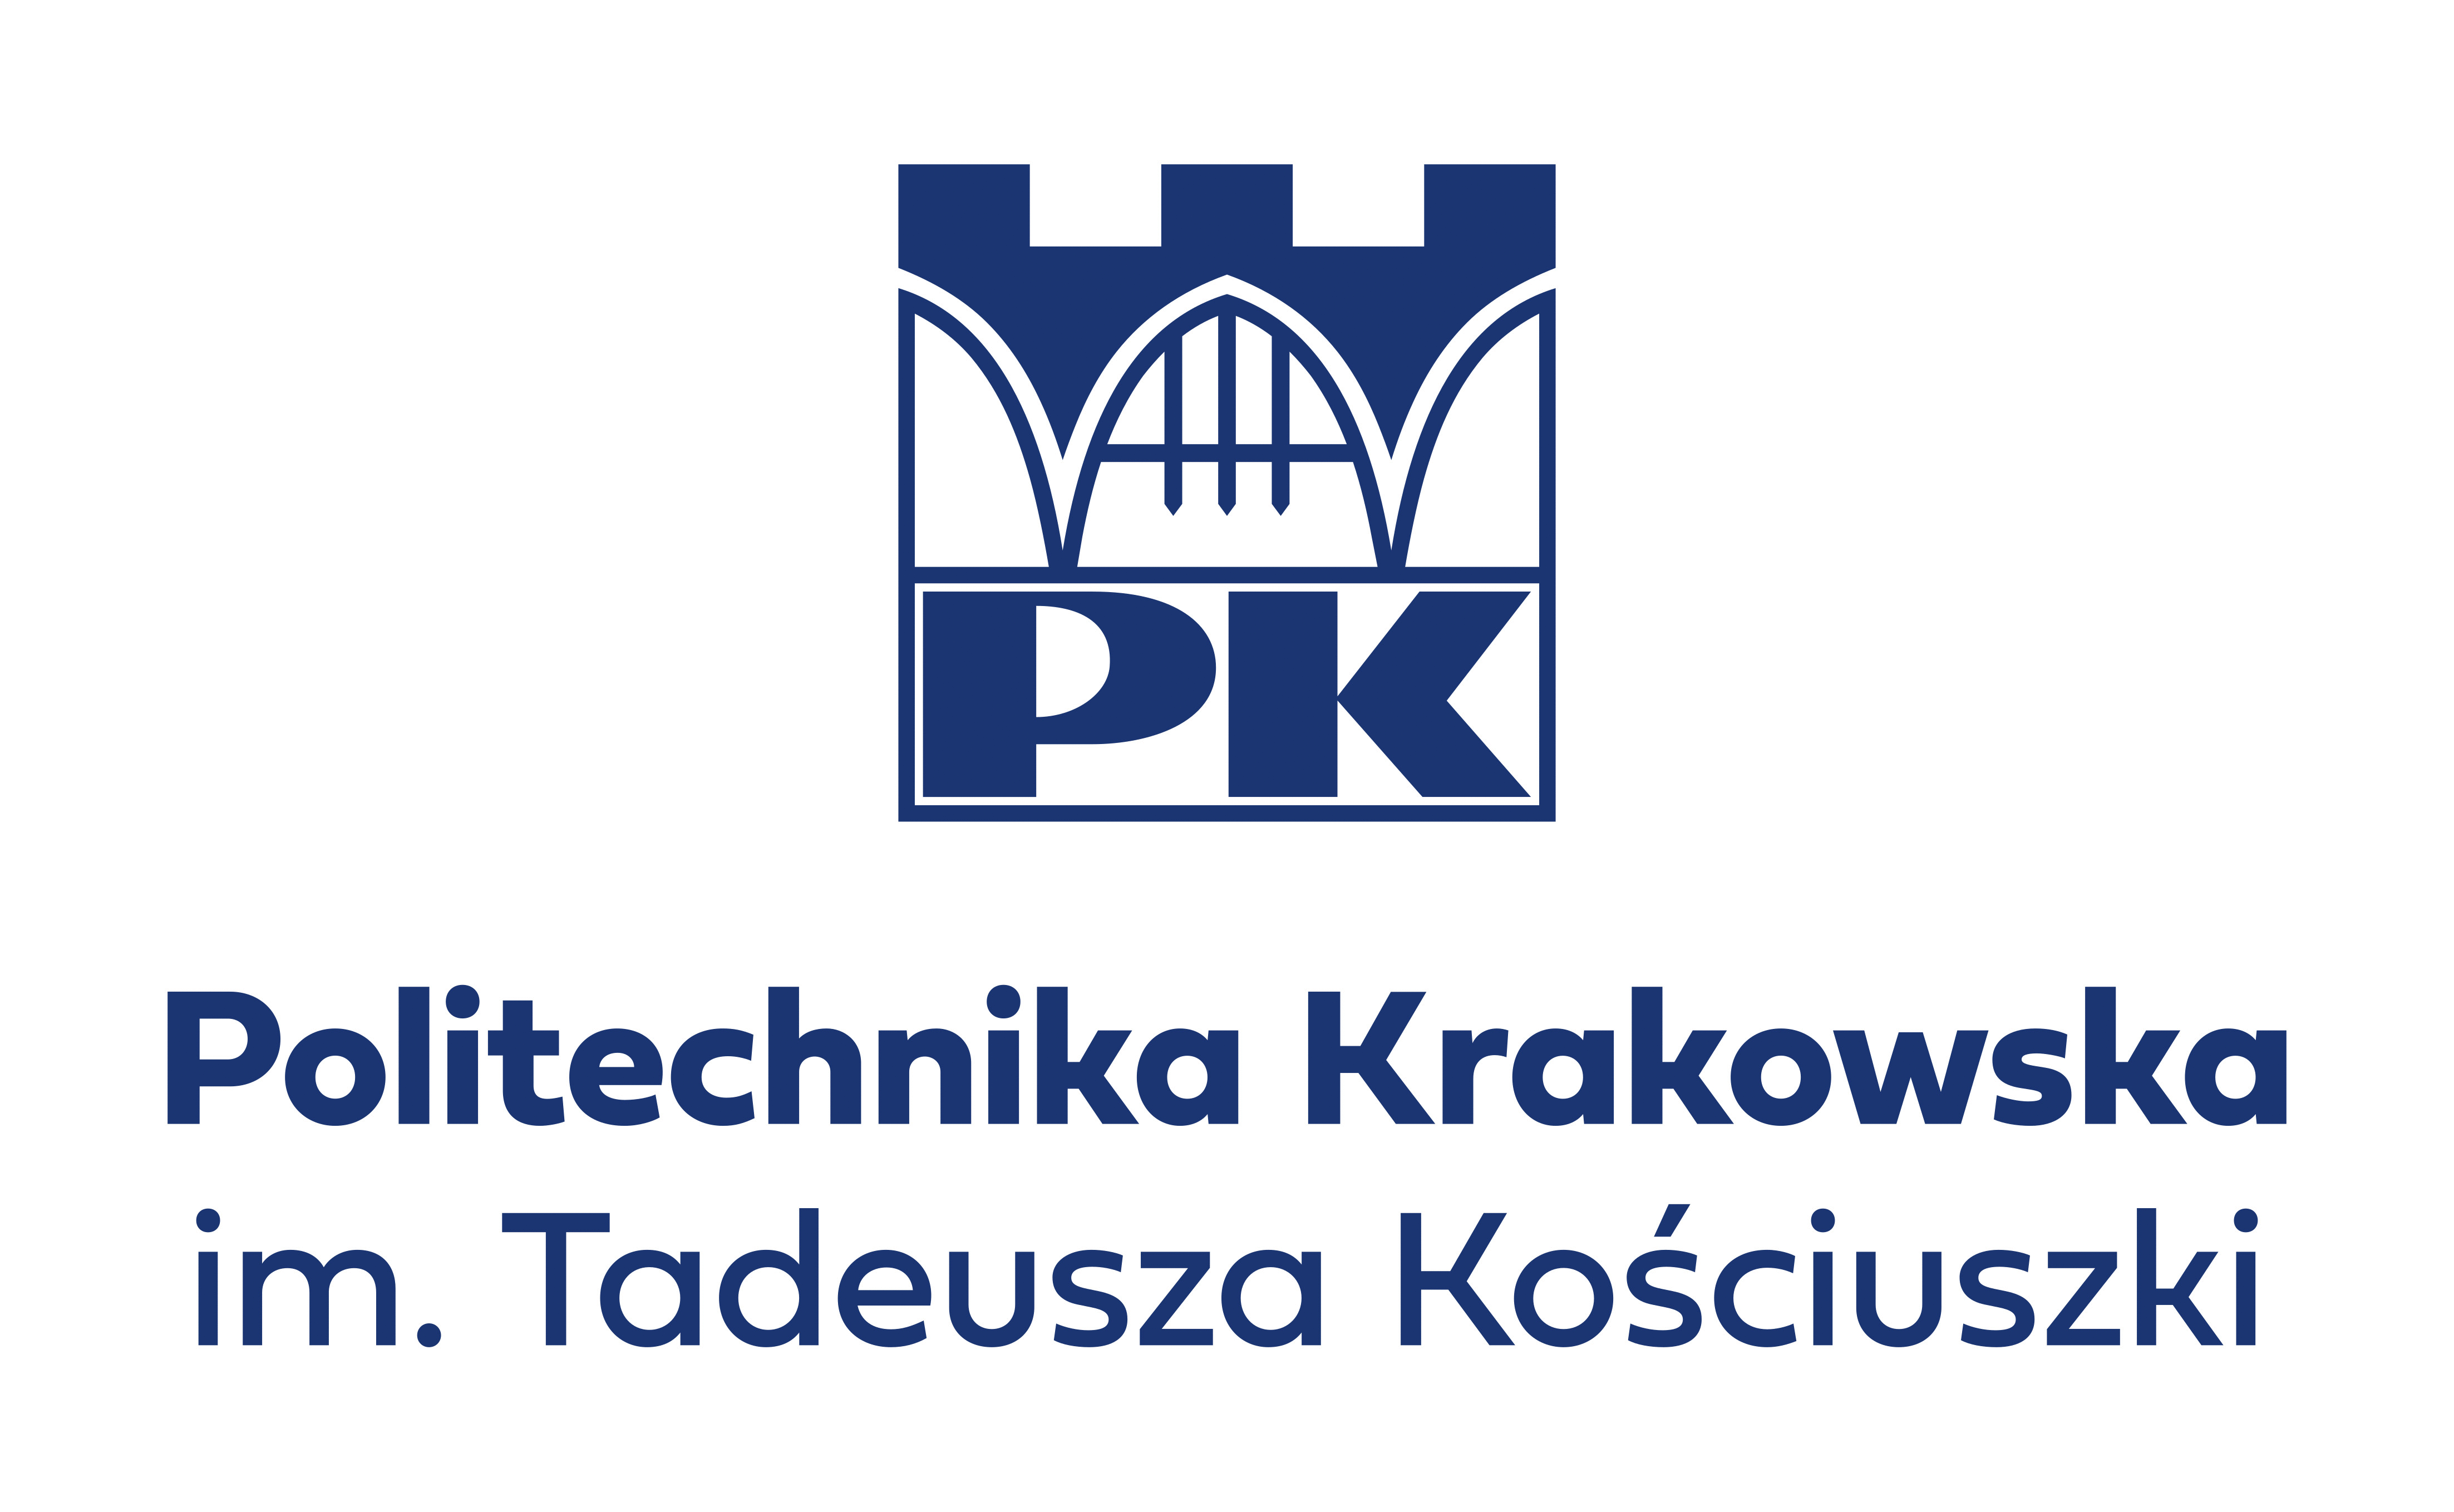 Politechnika Krakowska im. Tadeusza Kościuszki logo